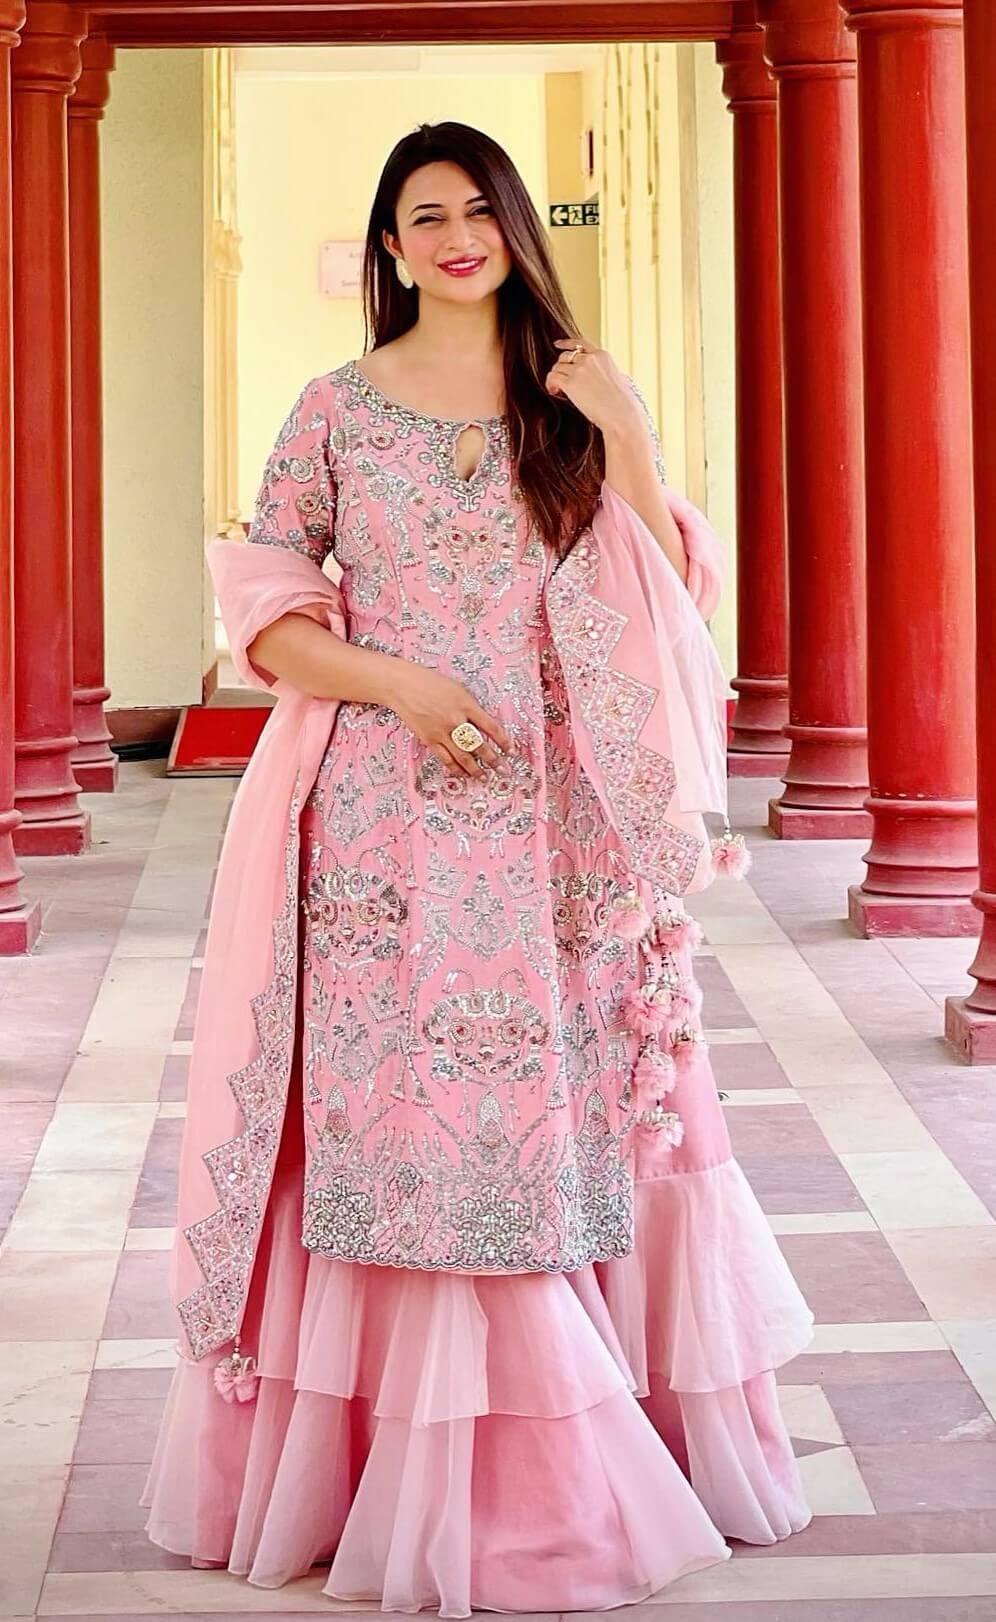 TV Actress Divyanka Tripathi Blooming Look In Pink Embellished Sharara Set